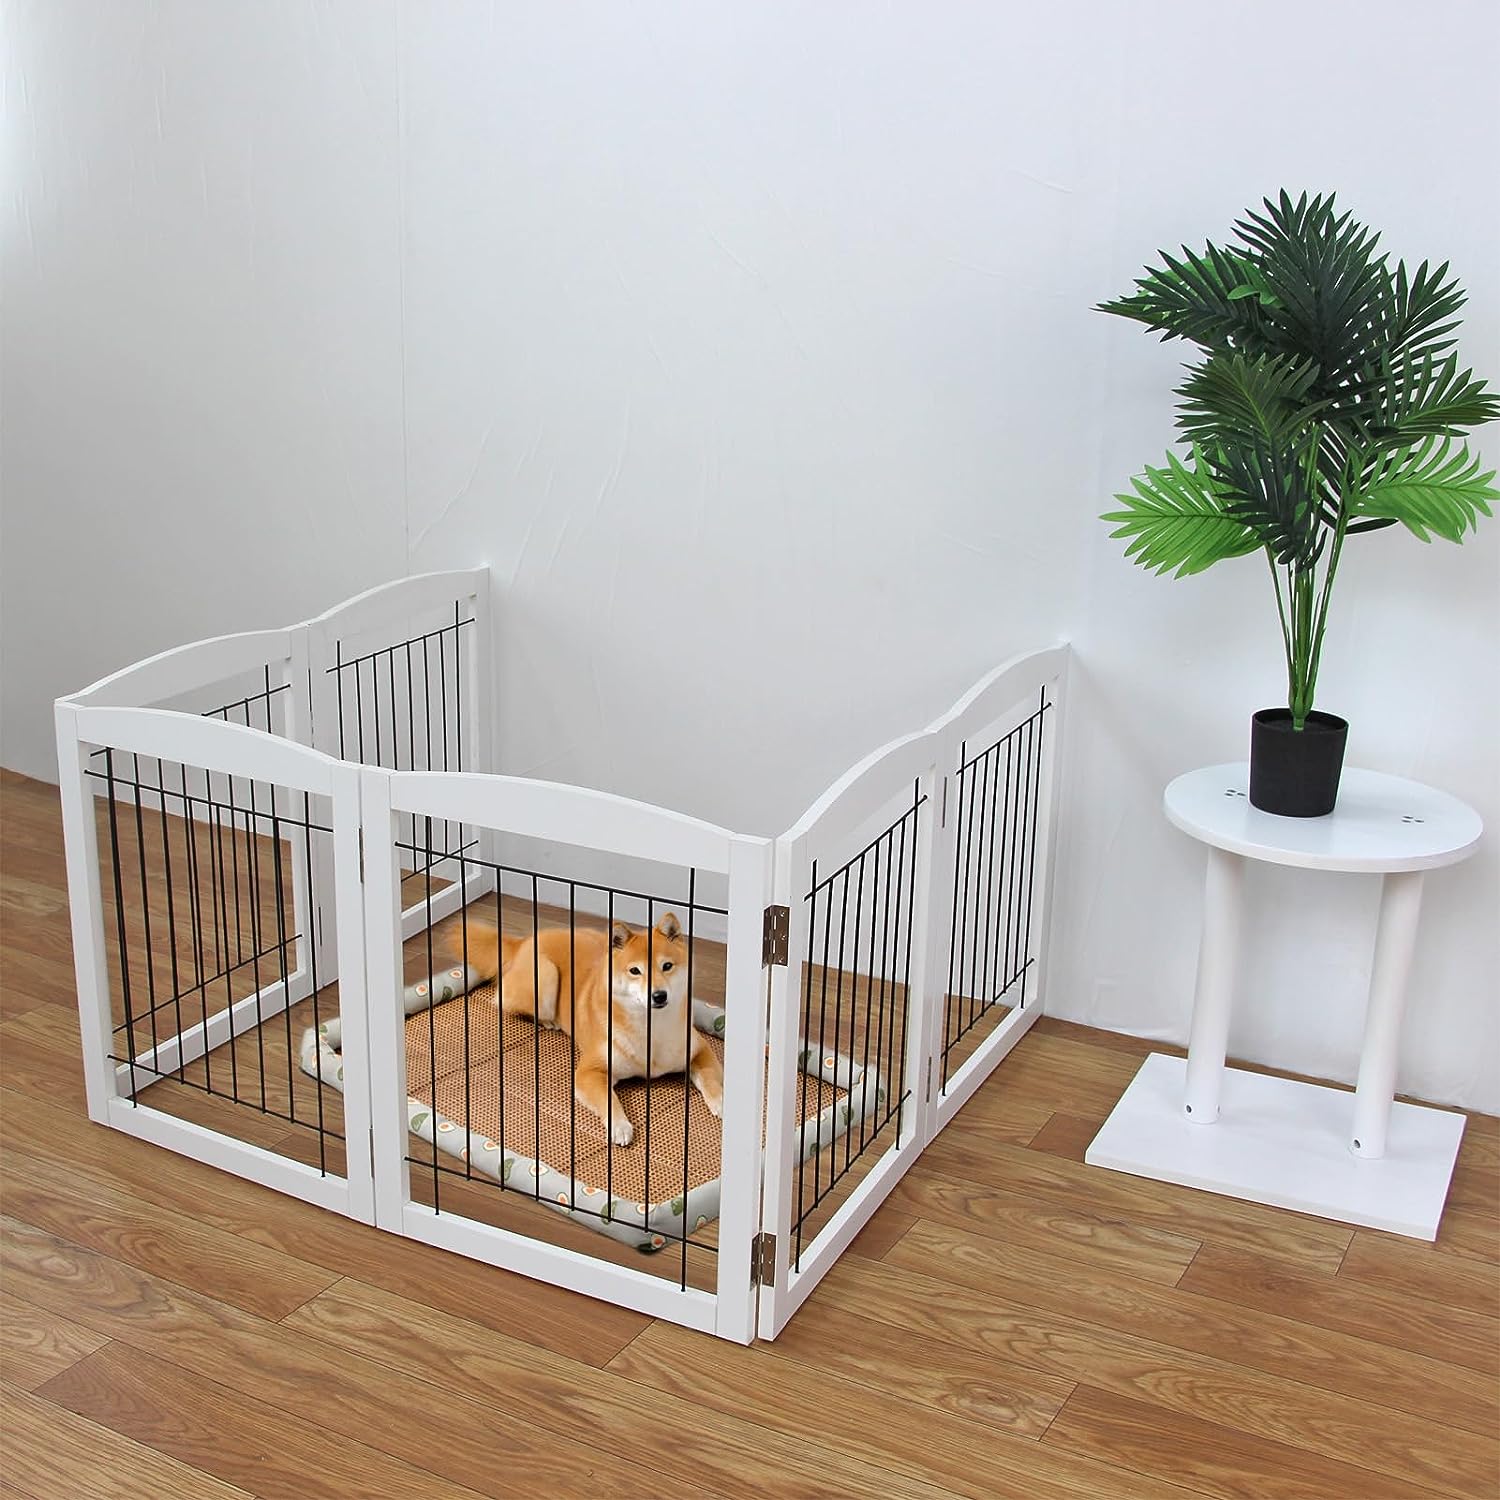 La mejor puerta para mascotas plegable, madera dura, valla para perros de  interior para el hogar, gris